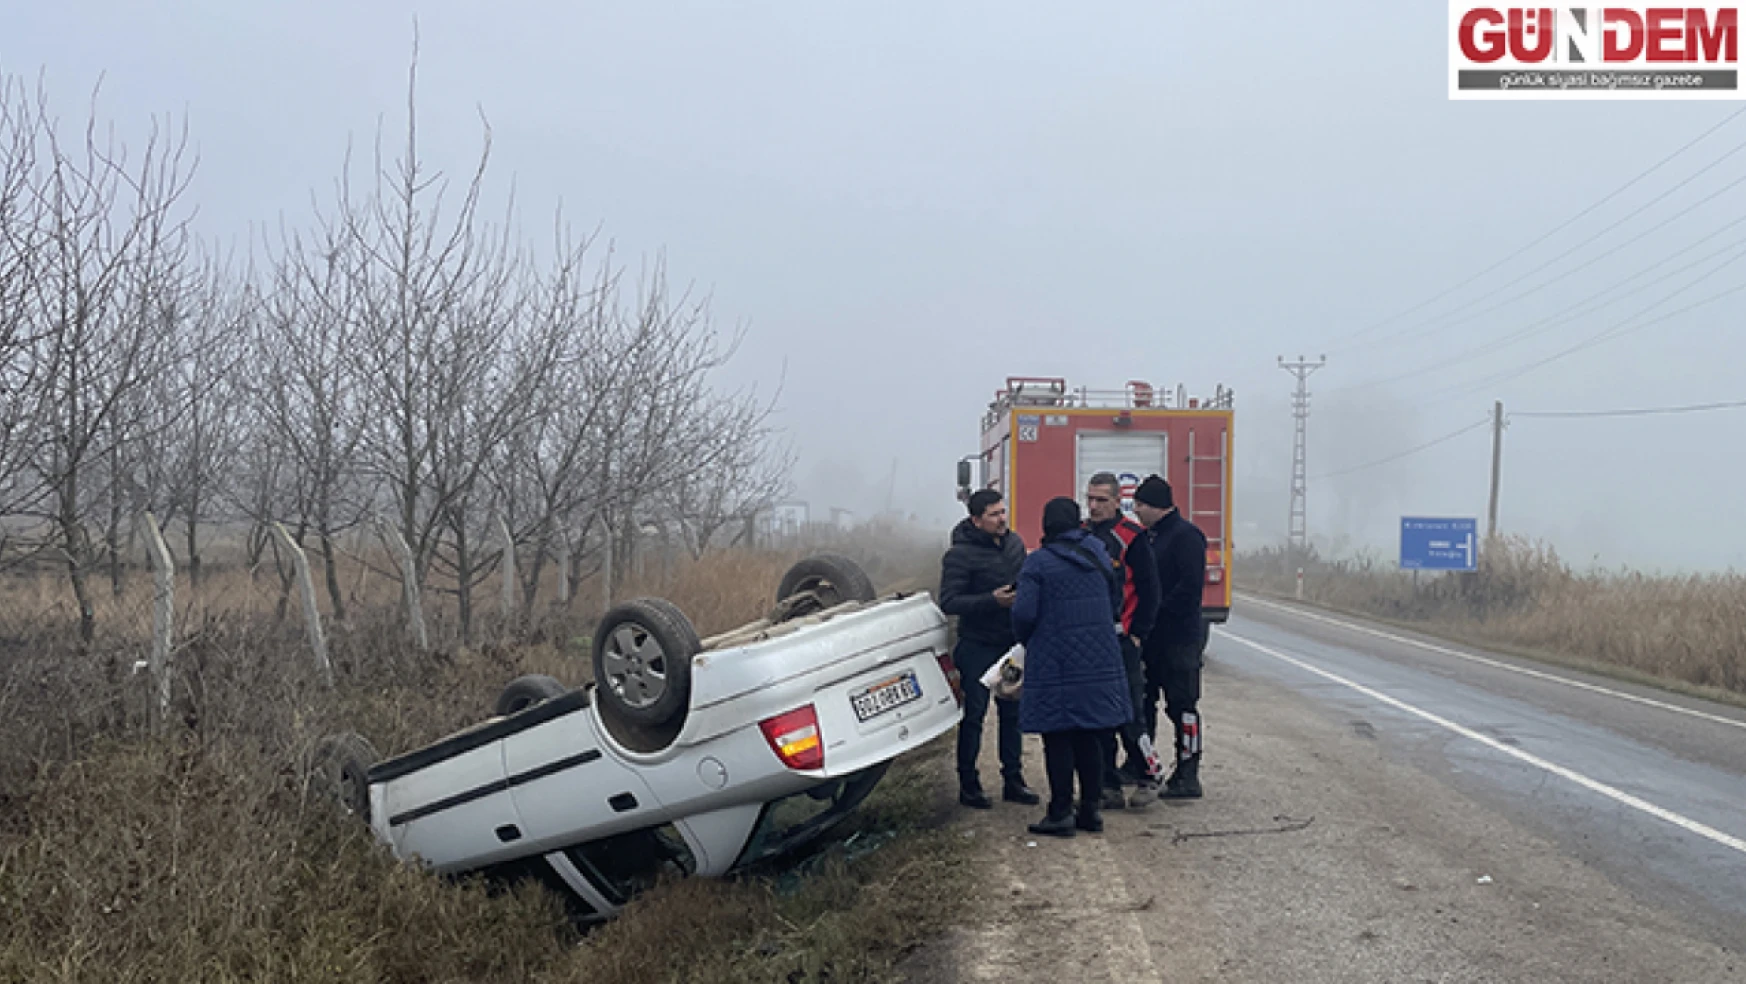 Edirne'de takla atan otomobildeki çift yaralandı